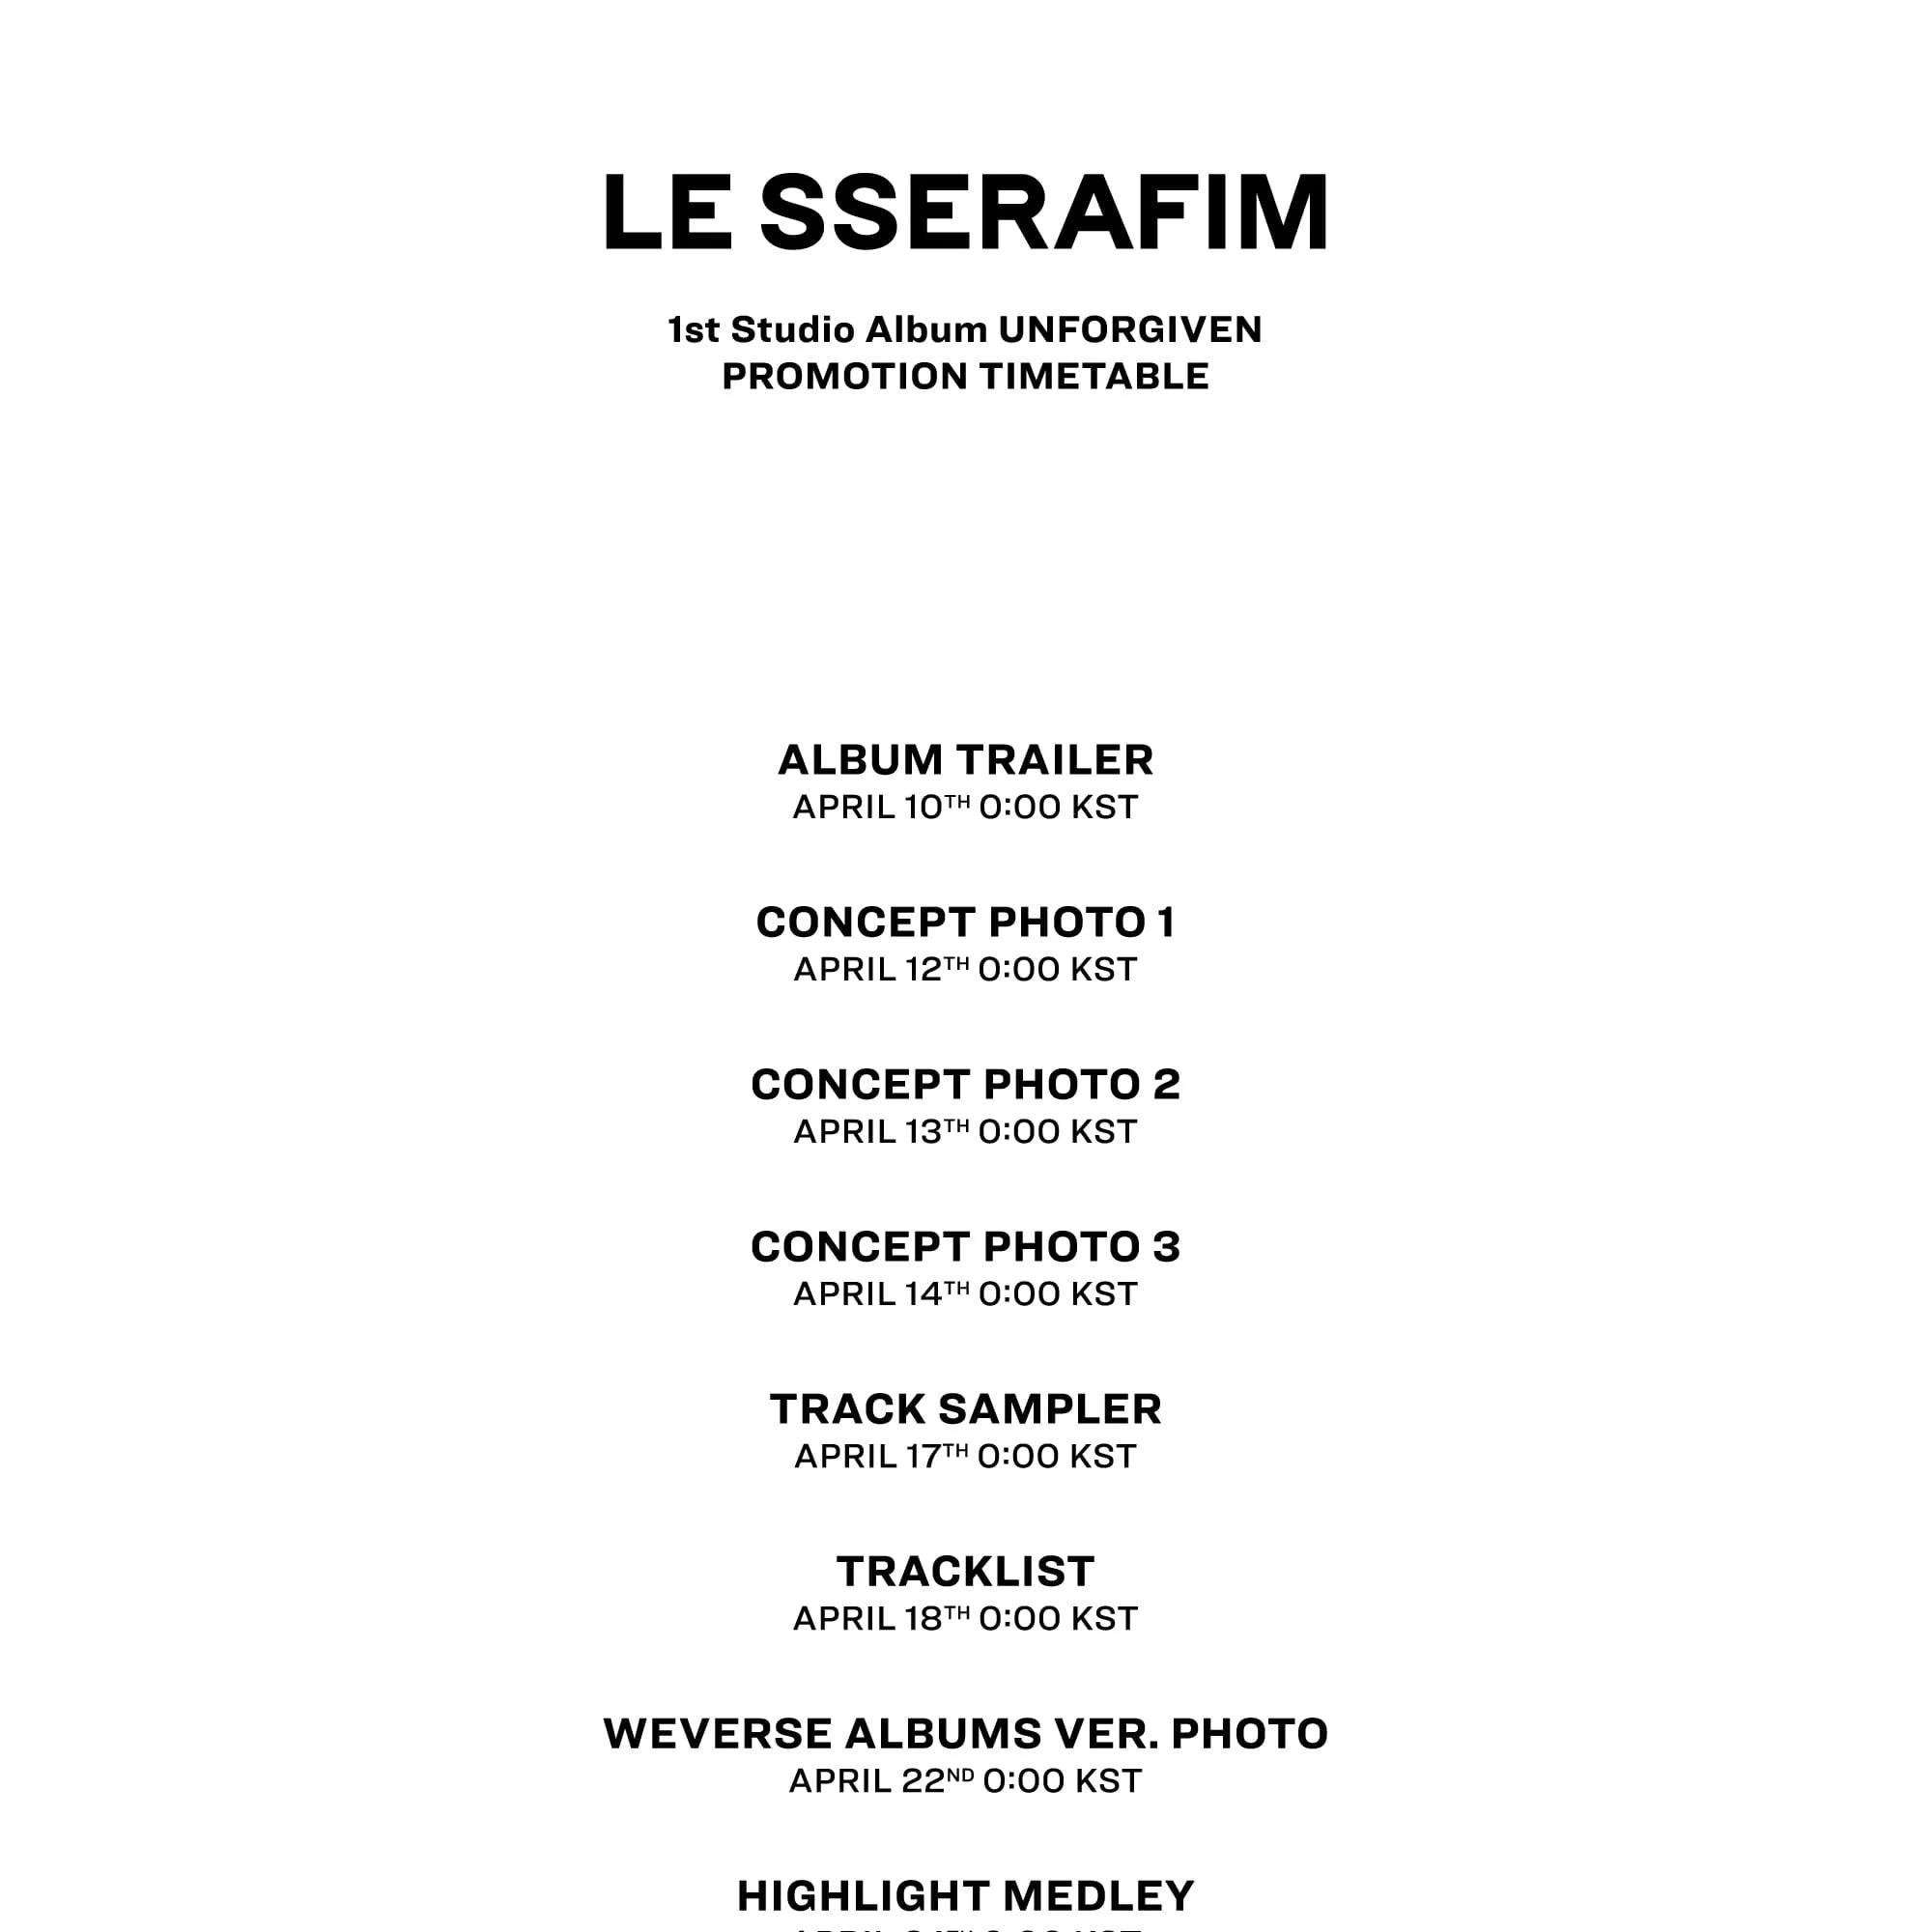 Le sserafim 1st Studio Album UNFORGIVEn Promotion Timetable